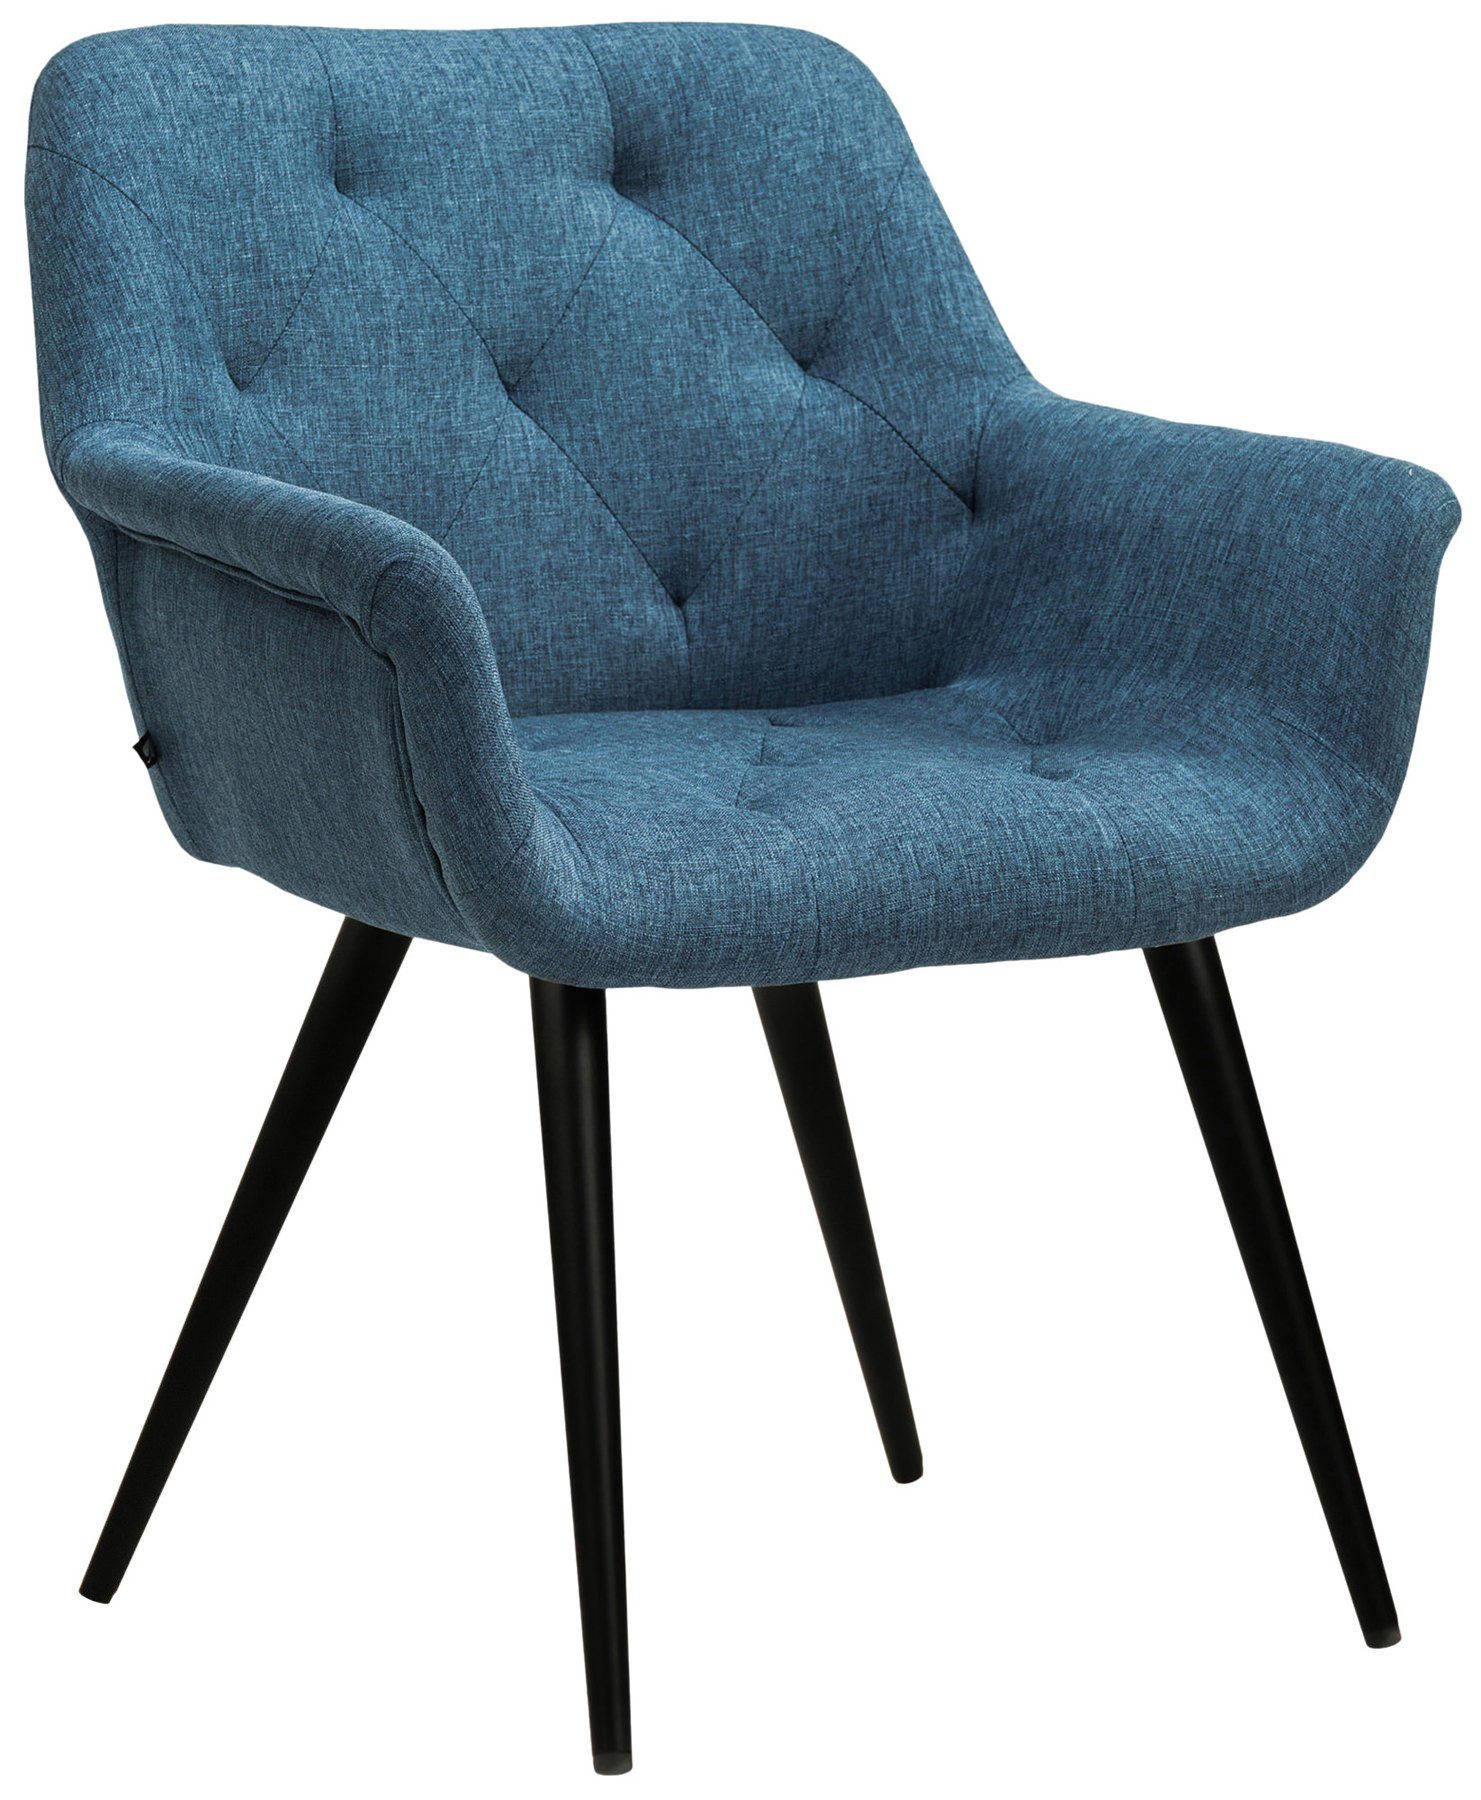 TPFLiving Esszimmerstuhl Lamfol mit hochwertig gepolsterter Sitzfläche - Konferenzstuhl (Küchenstuhl - Esstischstuhl - Wohnzimmerstuhl), Gestell: Metall schwarz - Sitzfläche: Stoff blau